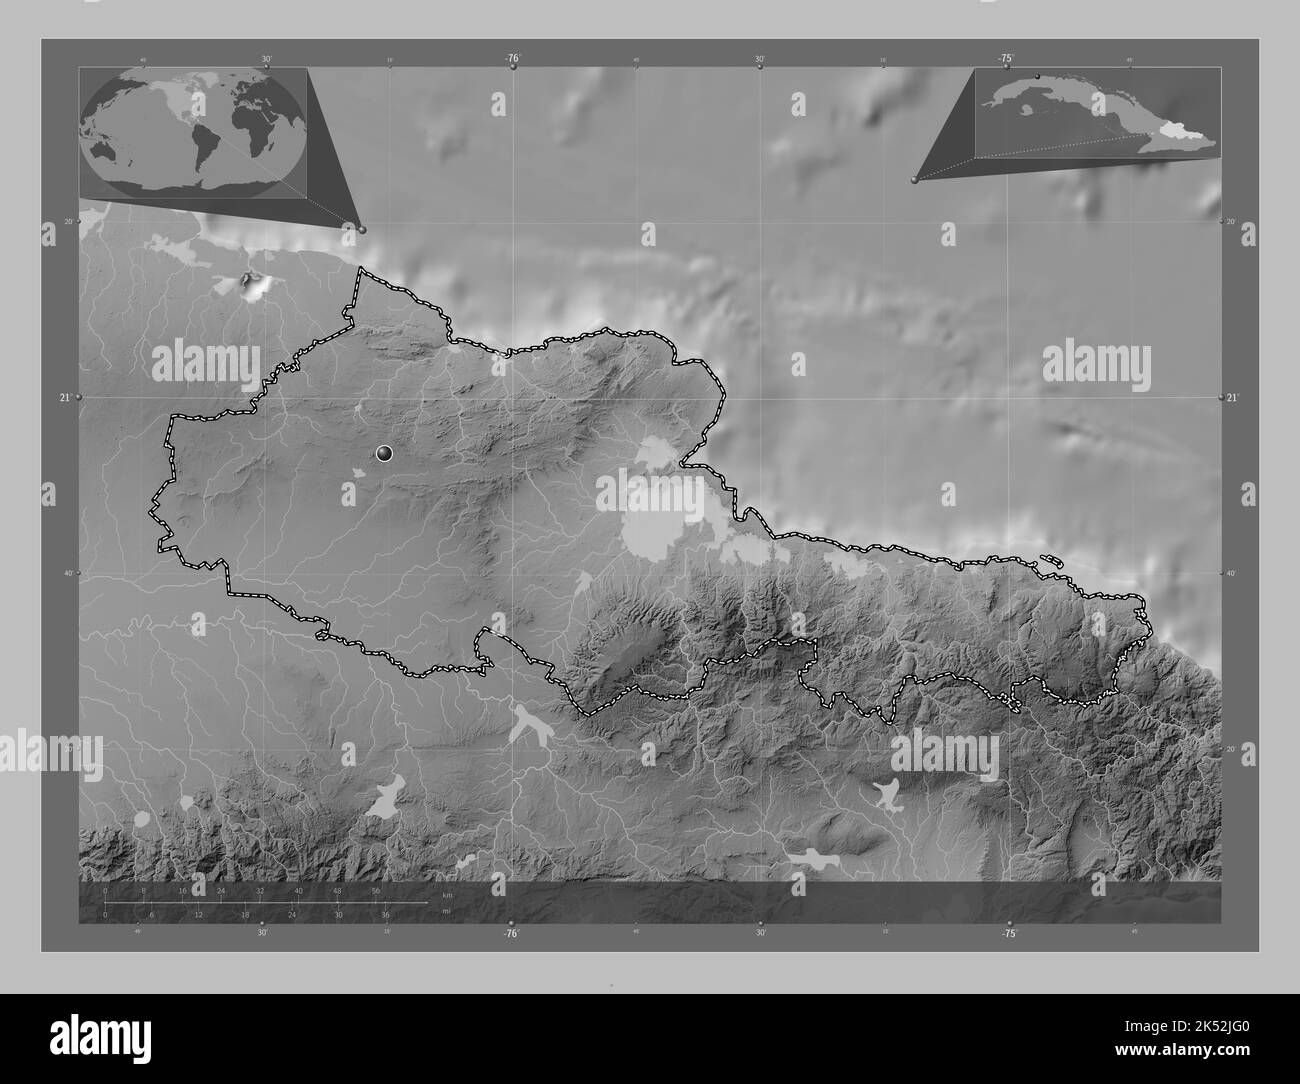 Holguin, province de Cuba. Carte d'altitude en niveaux de gris avec lacs et rivières. Cartes d'emplacement auxiliaire d'angle Banque D'Images